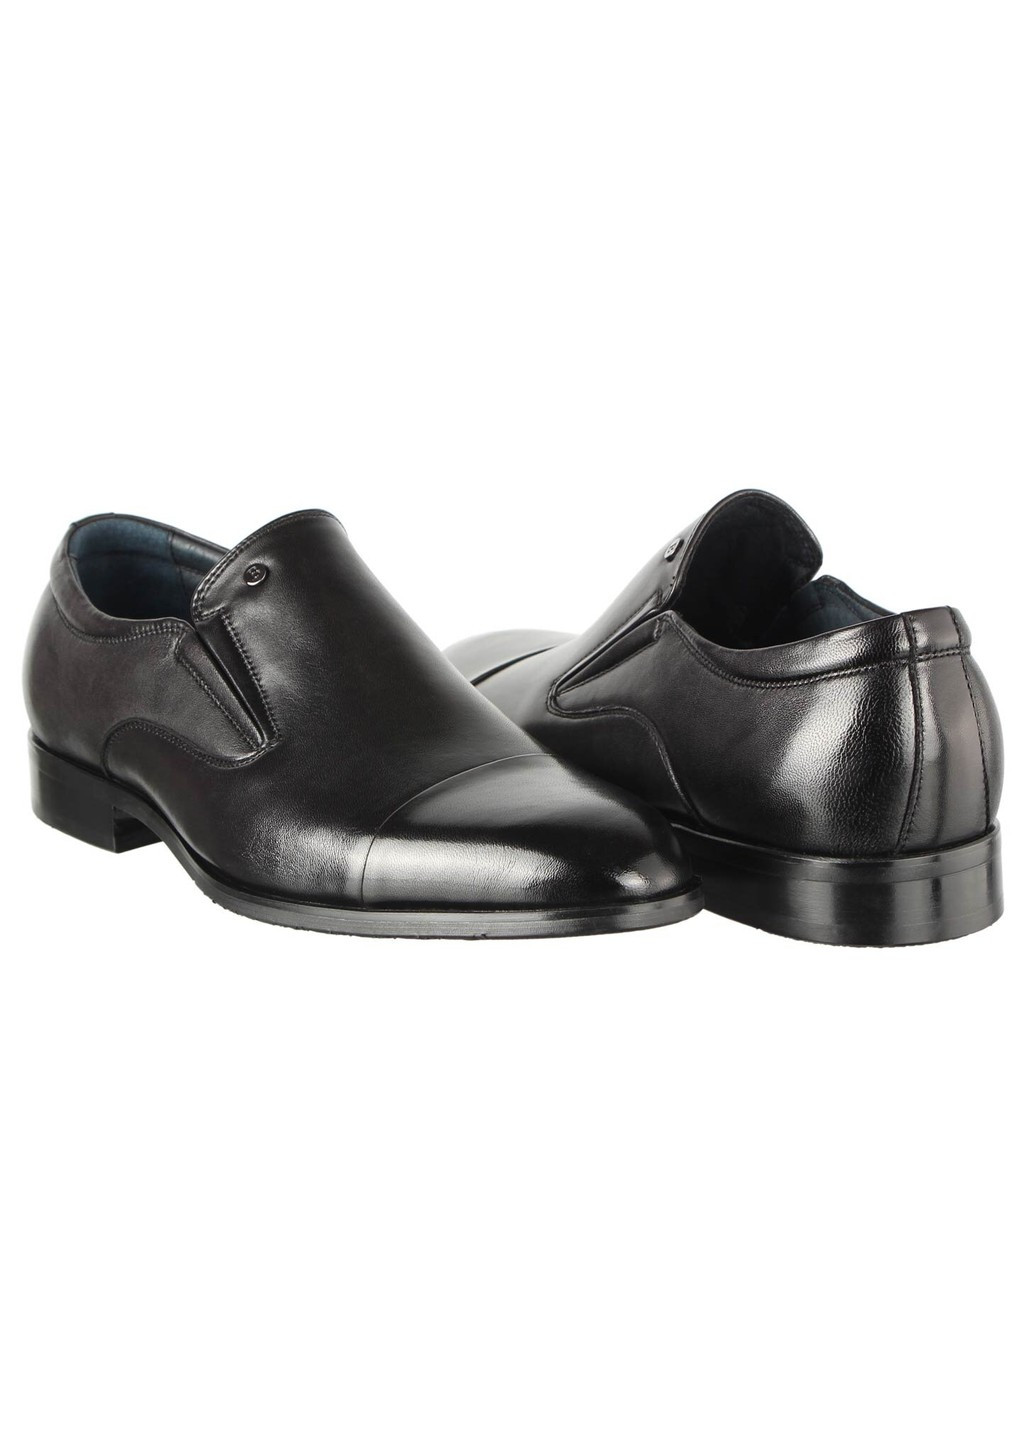 Черные мужские классические туфли 196495 Buts без шнурков